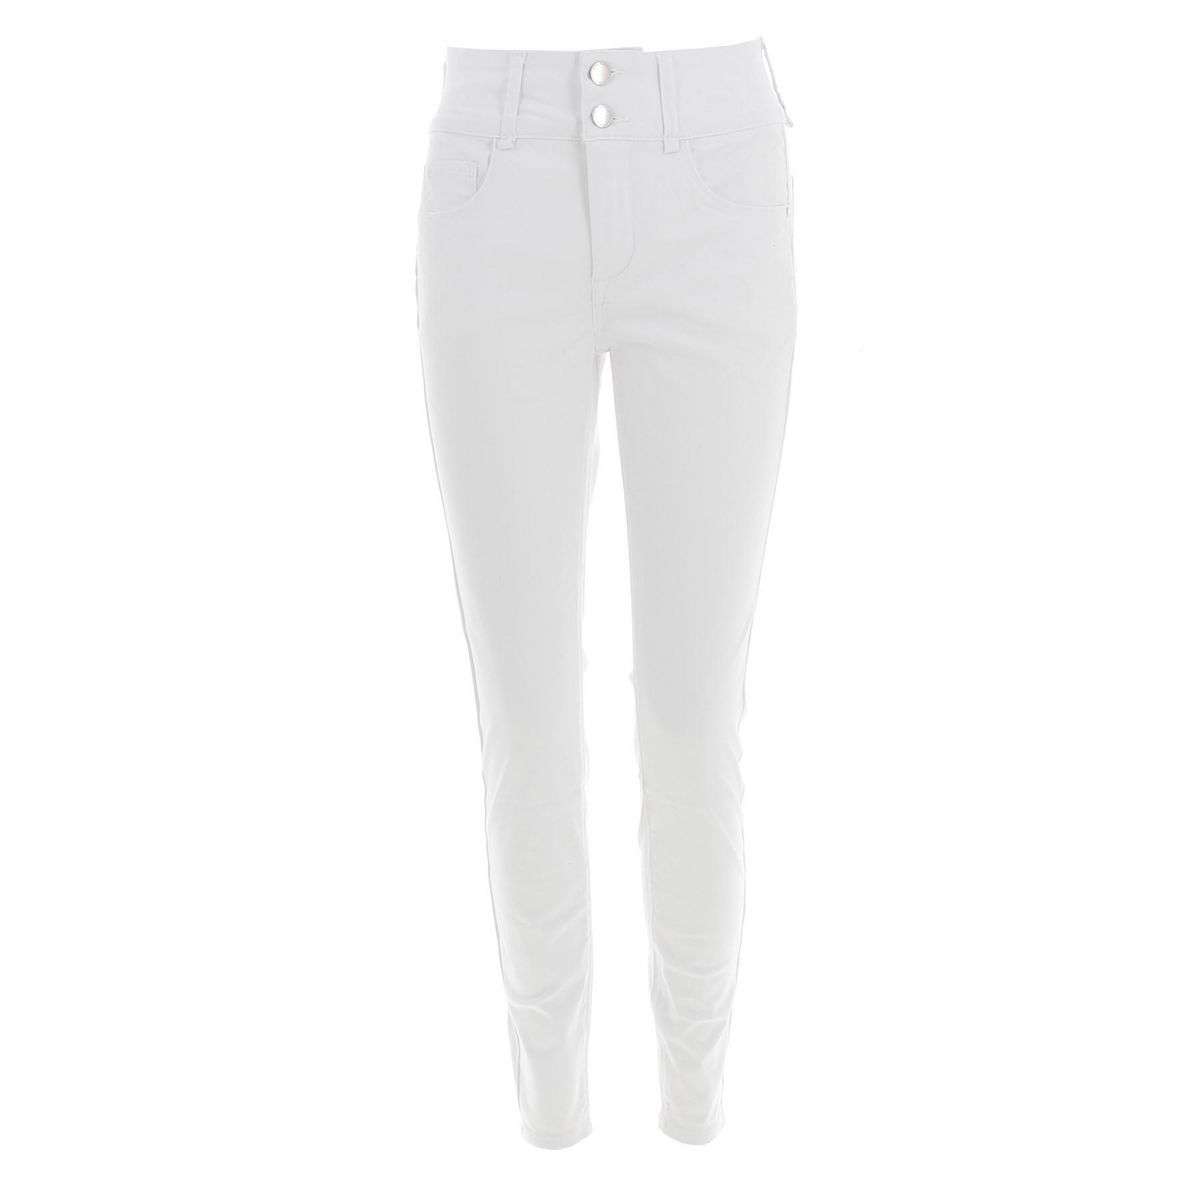 Tiffosi Pantalon jeans Tiffosi Jeans double up 434 white  7-694